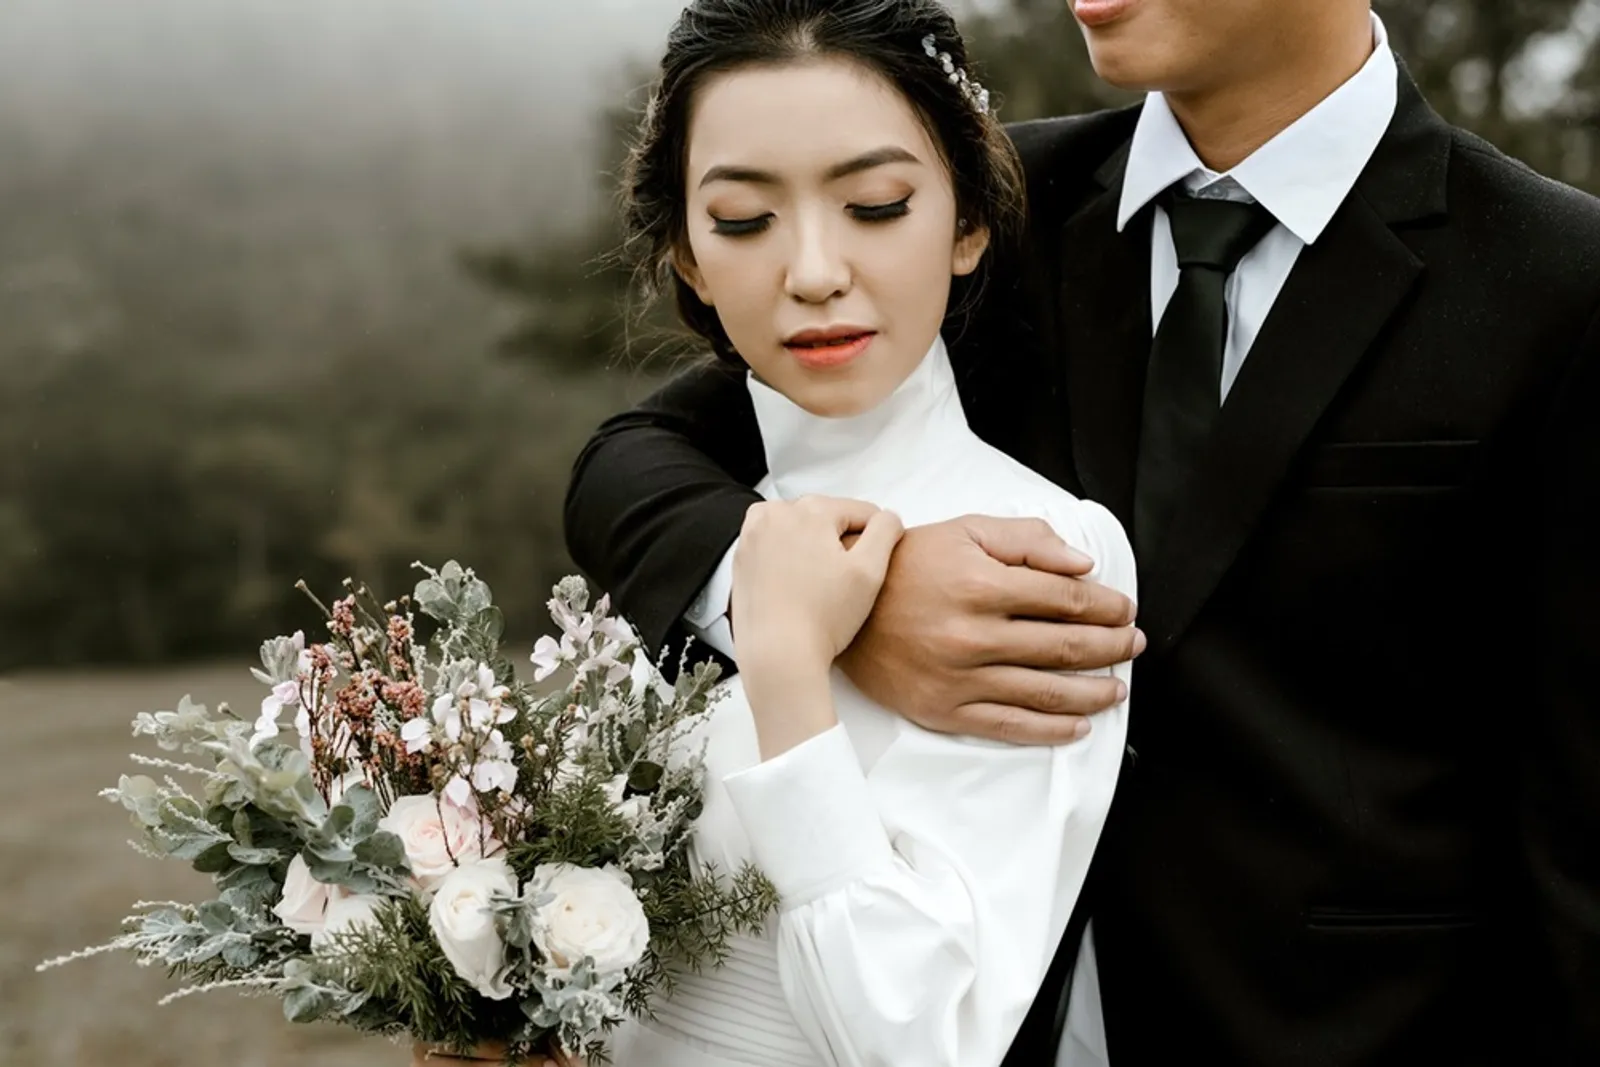 Ada 5 Tipe Pertengkaran dalam Pernikahan, Cek Kamu dan Dia Masuk Mana?